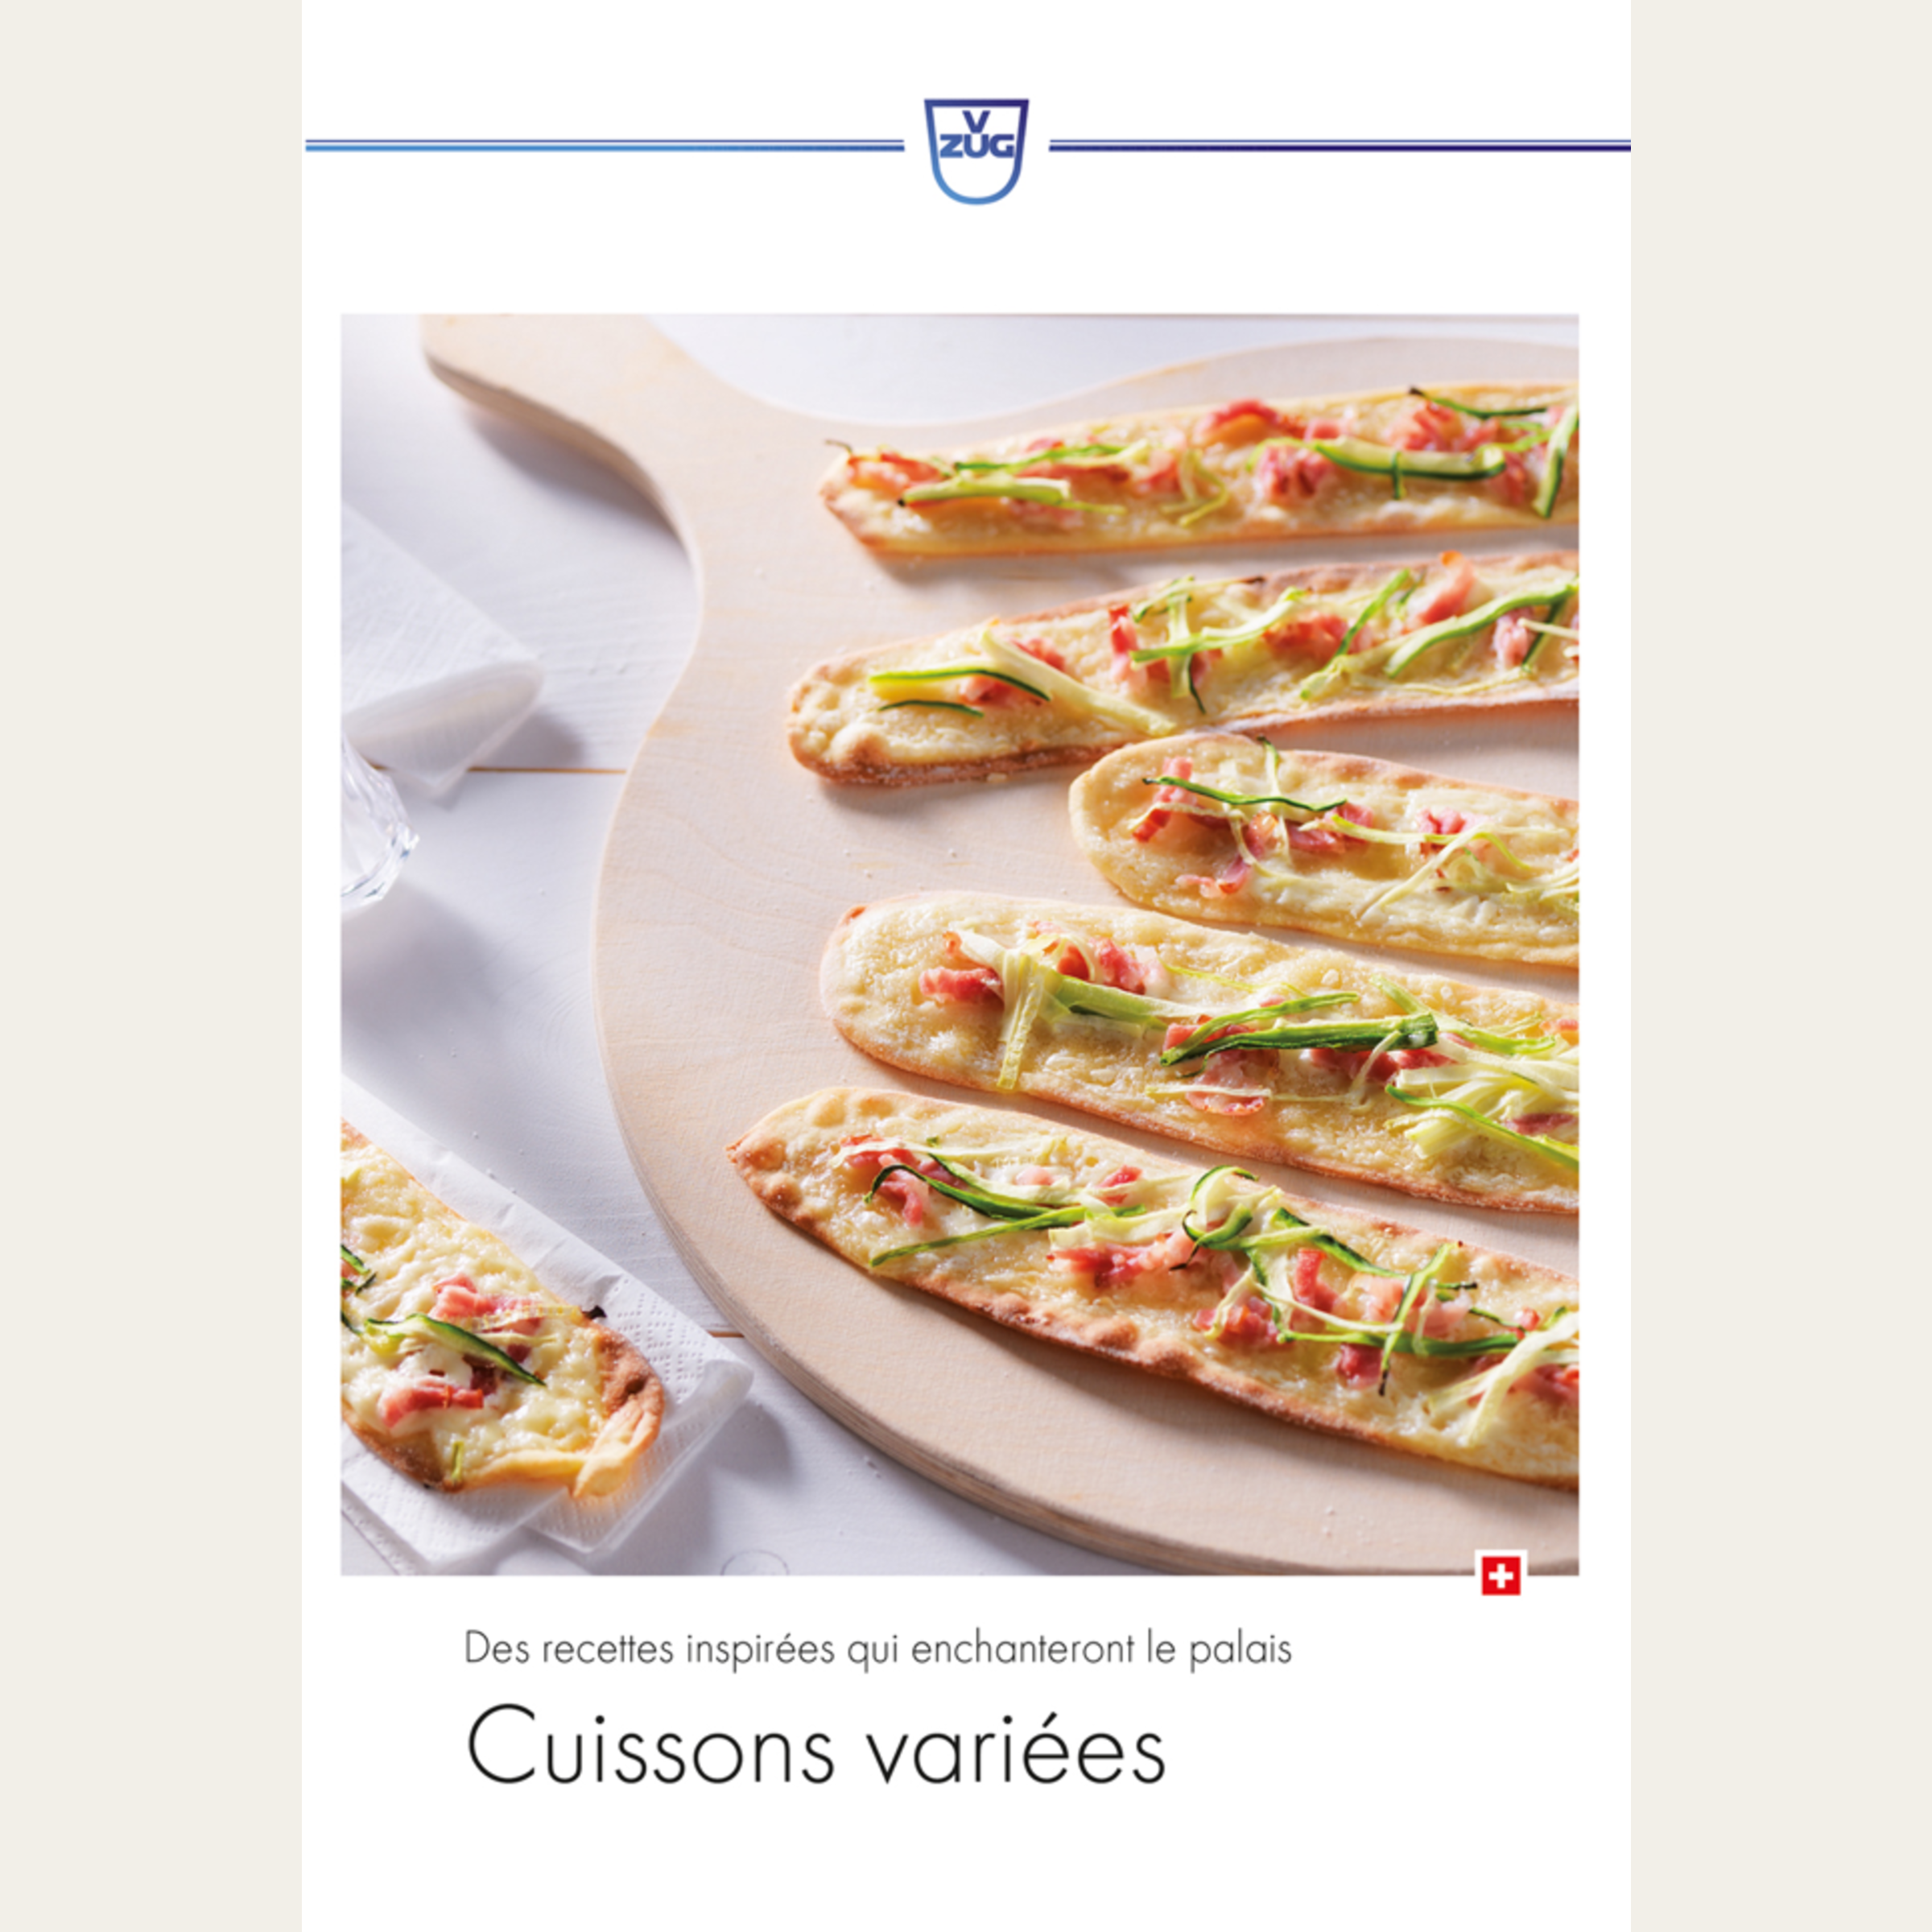 Livre de recettes français 'Cuissons variées' (CH)